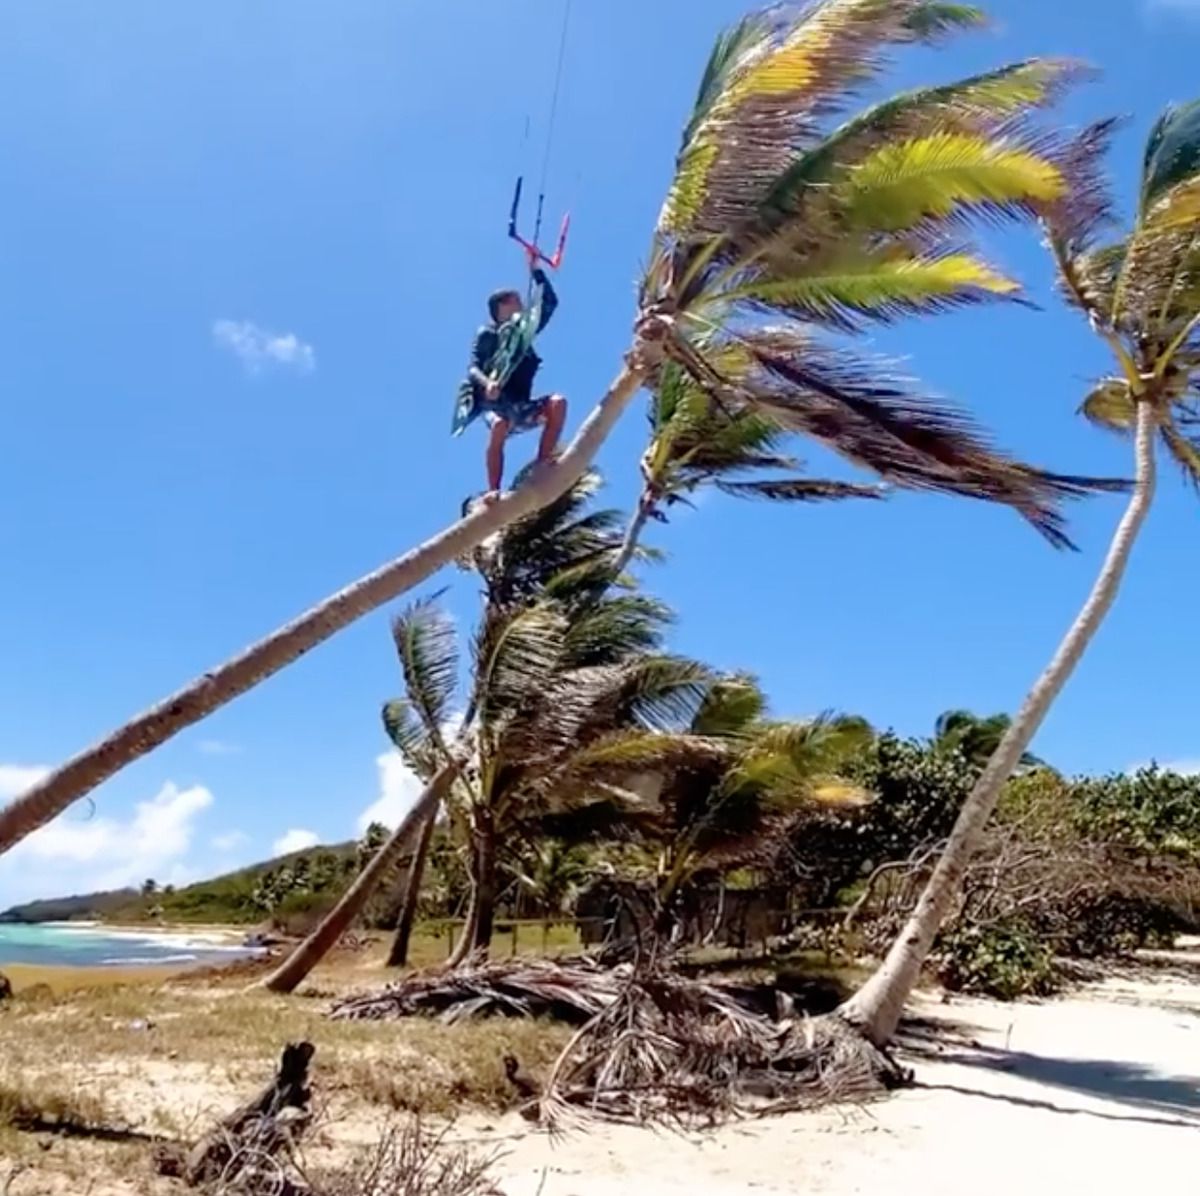 Екстремал зістрибнув з кокосової пальми, щоб зняти ефектне відео. Кайтсерфер здійснив непростий трюк, спустившись на воду з пальми.